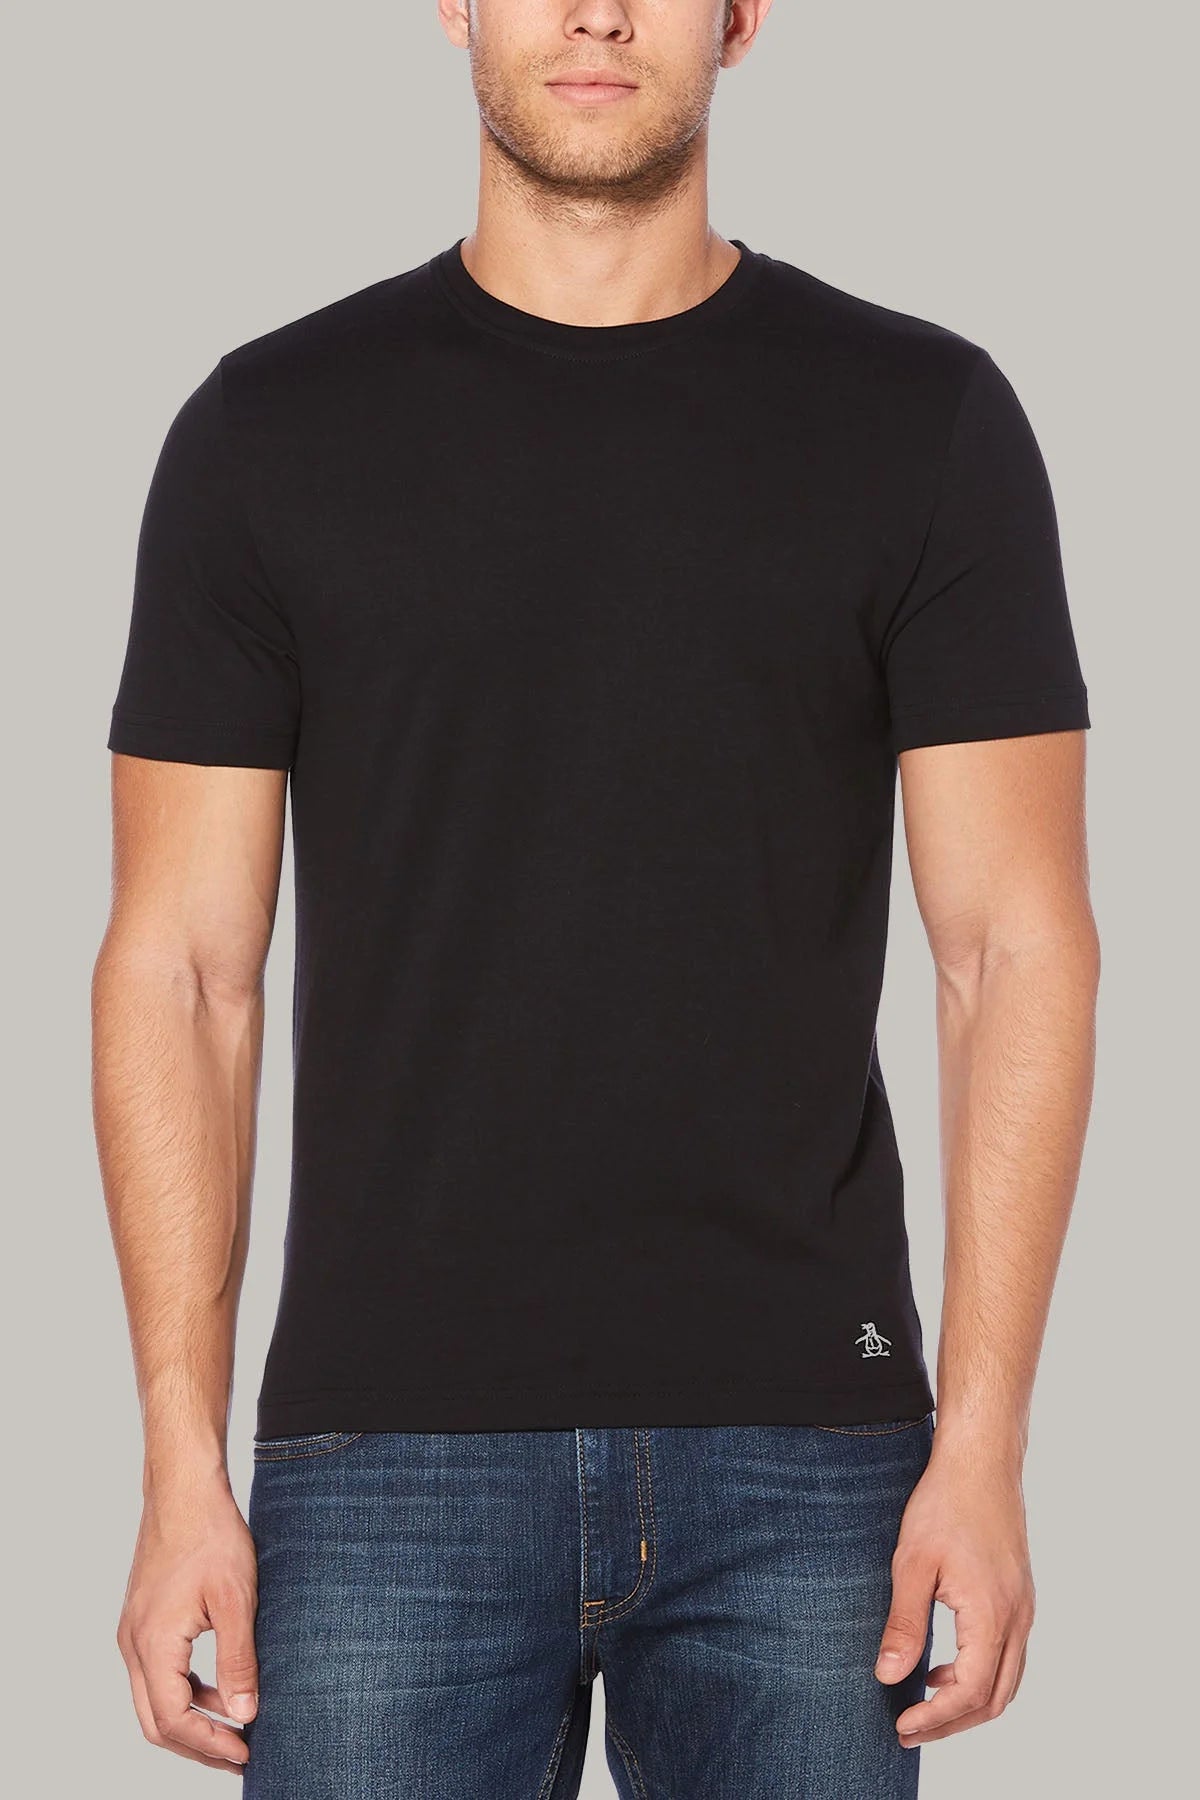 Penguin Original Pinpoint T-Shirts Black / S